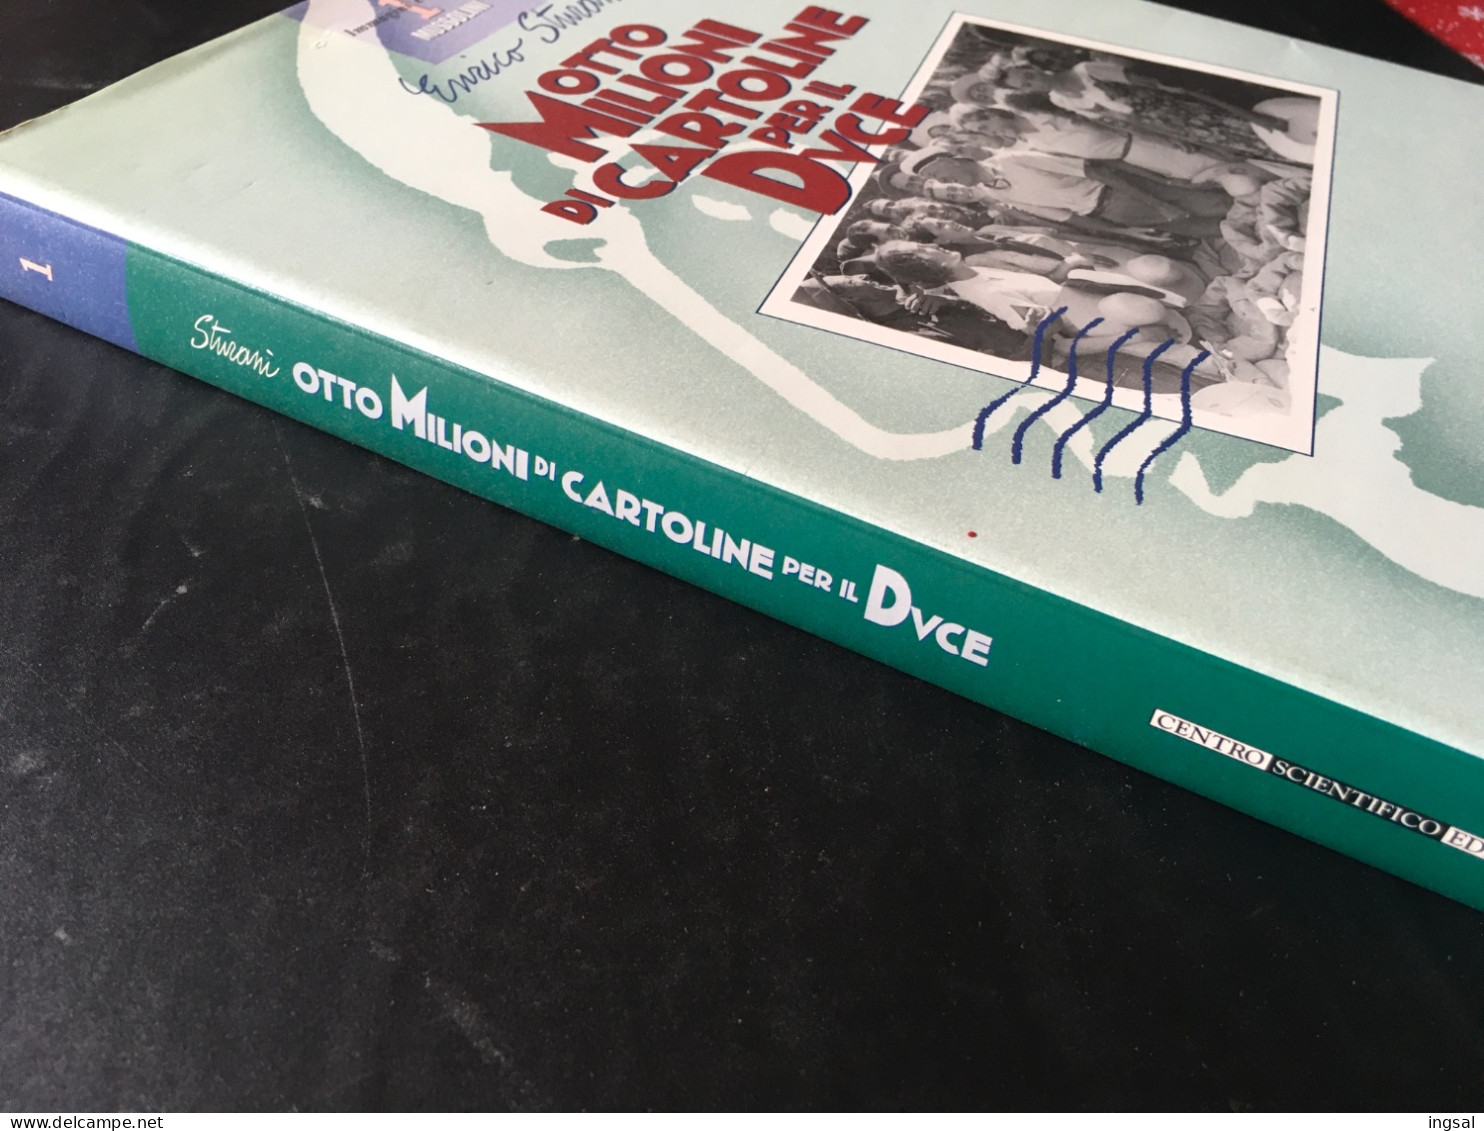 Immagini E Storia Di Mussolini…..Otto Milioni Di Cartoline Per Il Duce ……” Editore…Centro Scientifico......Edizione 1995 - Bibliografie